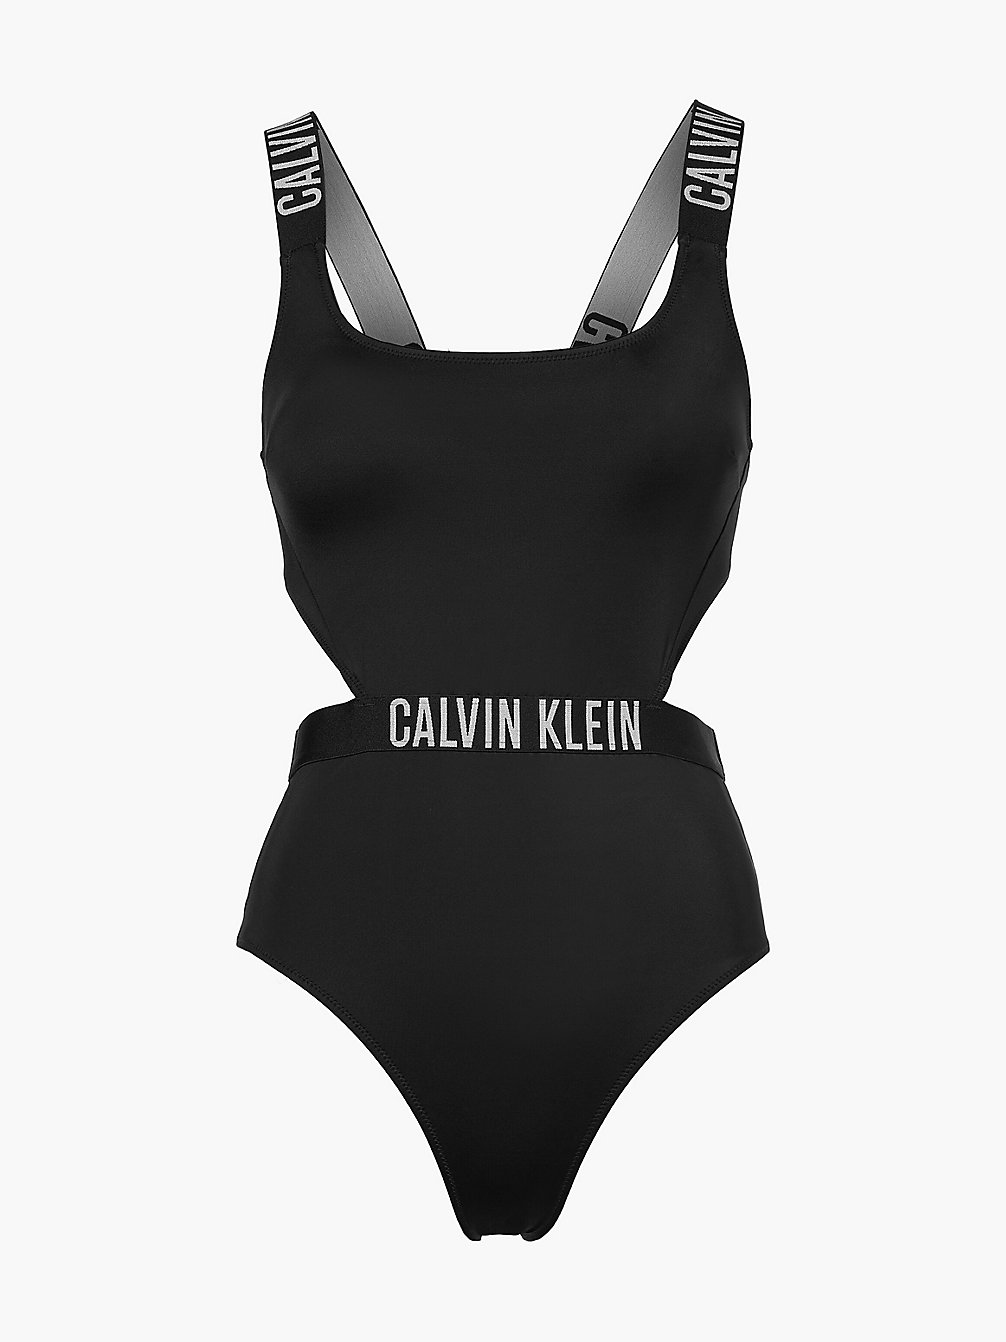 PVH BLACK Badeanzug Mit Cut Outs - Intense Power undefined Damen Calvin Klein